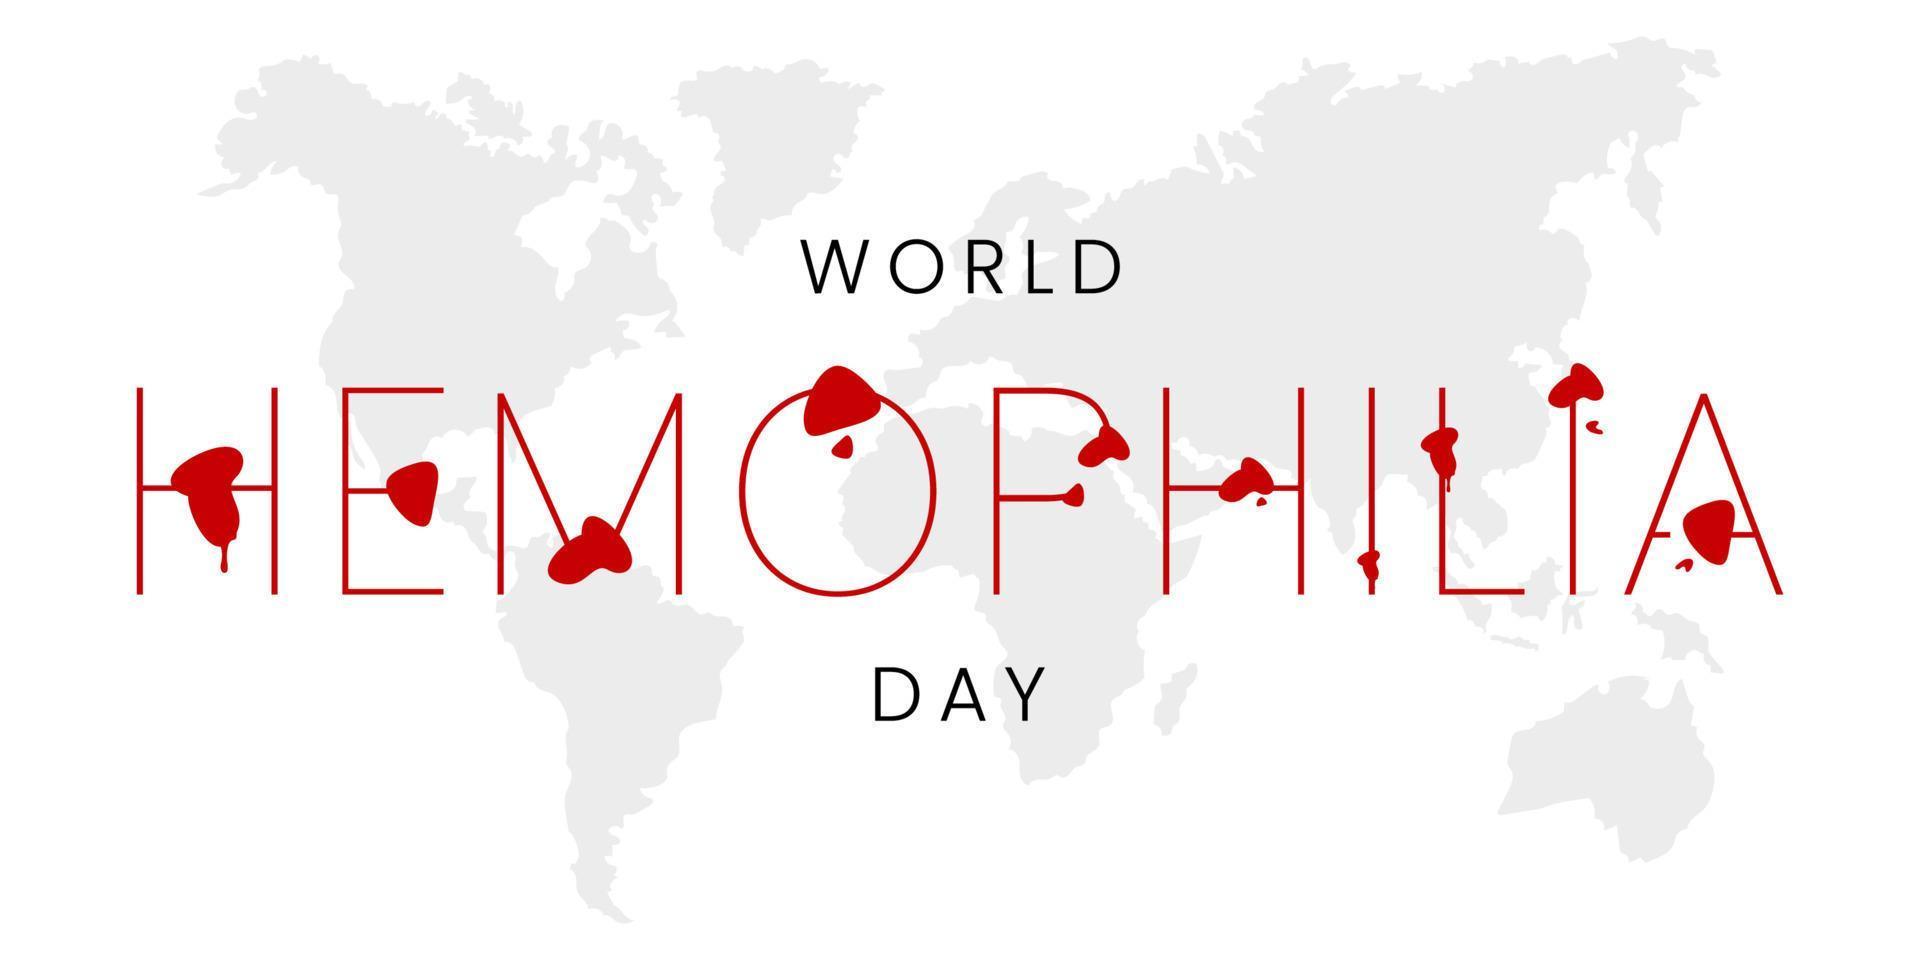 monde hémophilie journée sur avril 17. hémophilie conscience journée. santé conscience vecteur modèle pour bannière, carte, affiche, Contexte.